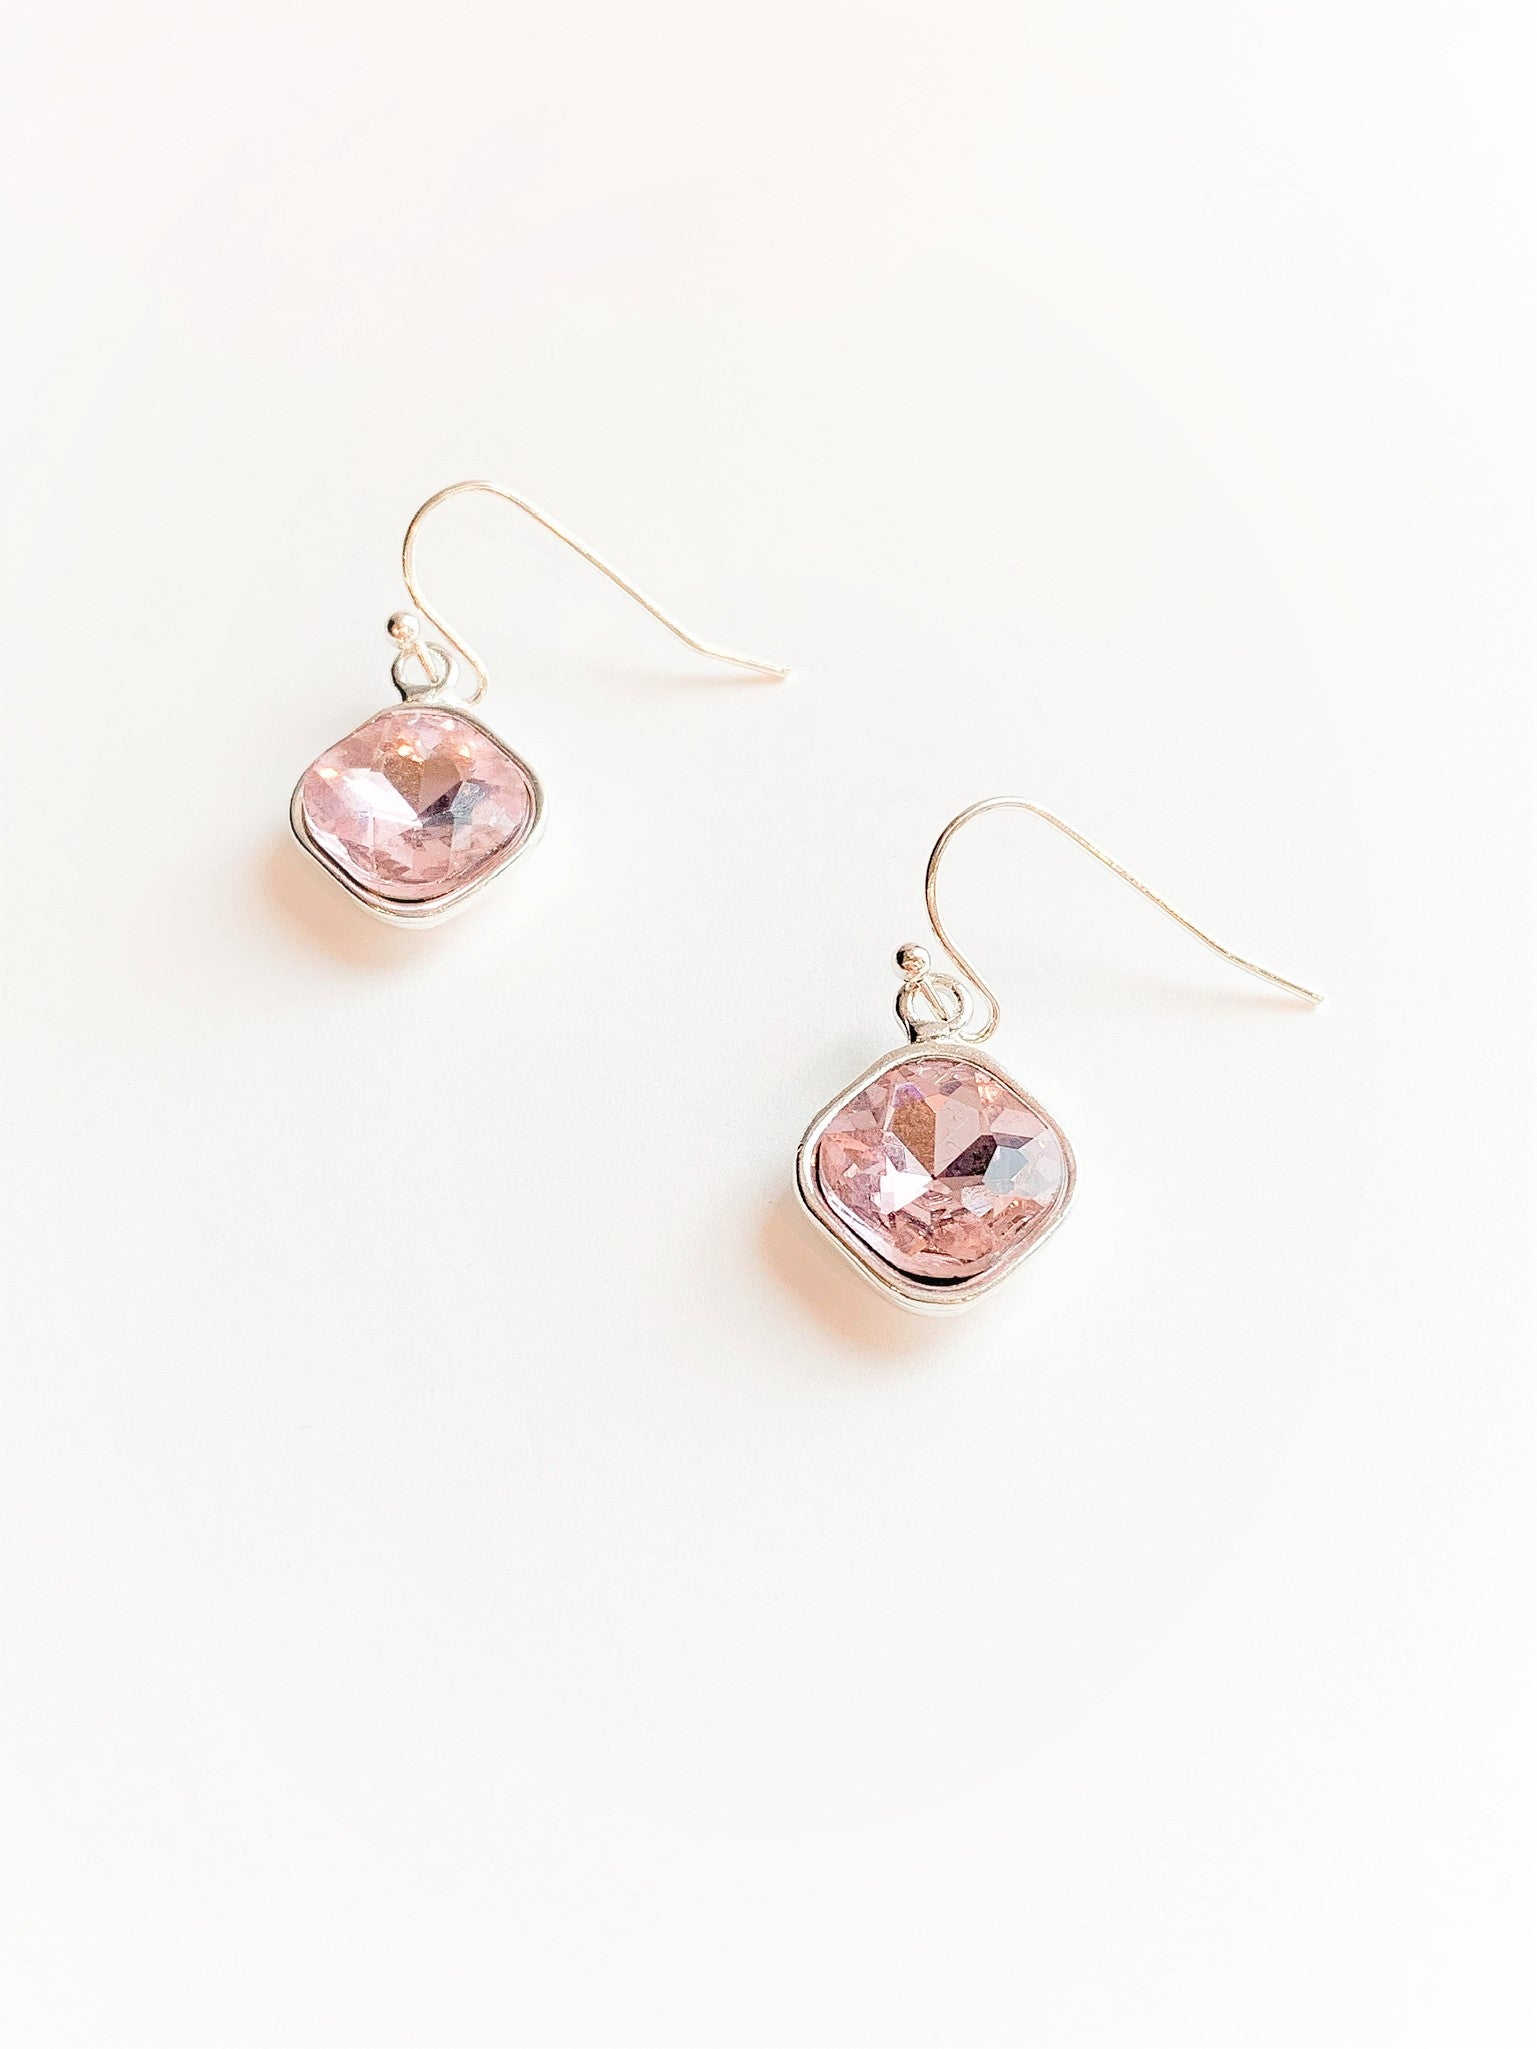 Kayla Earrings in Pink & Silver